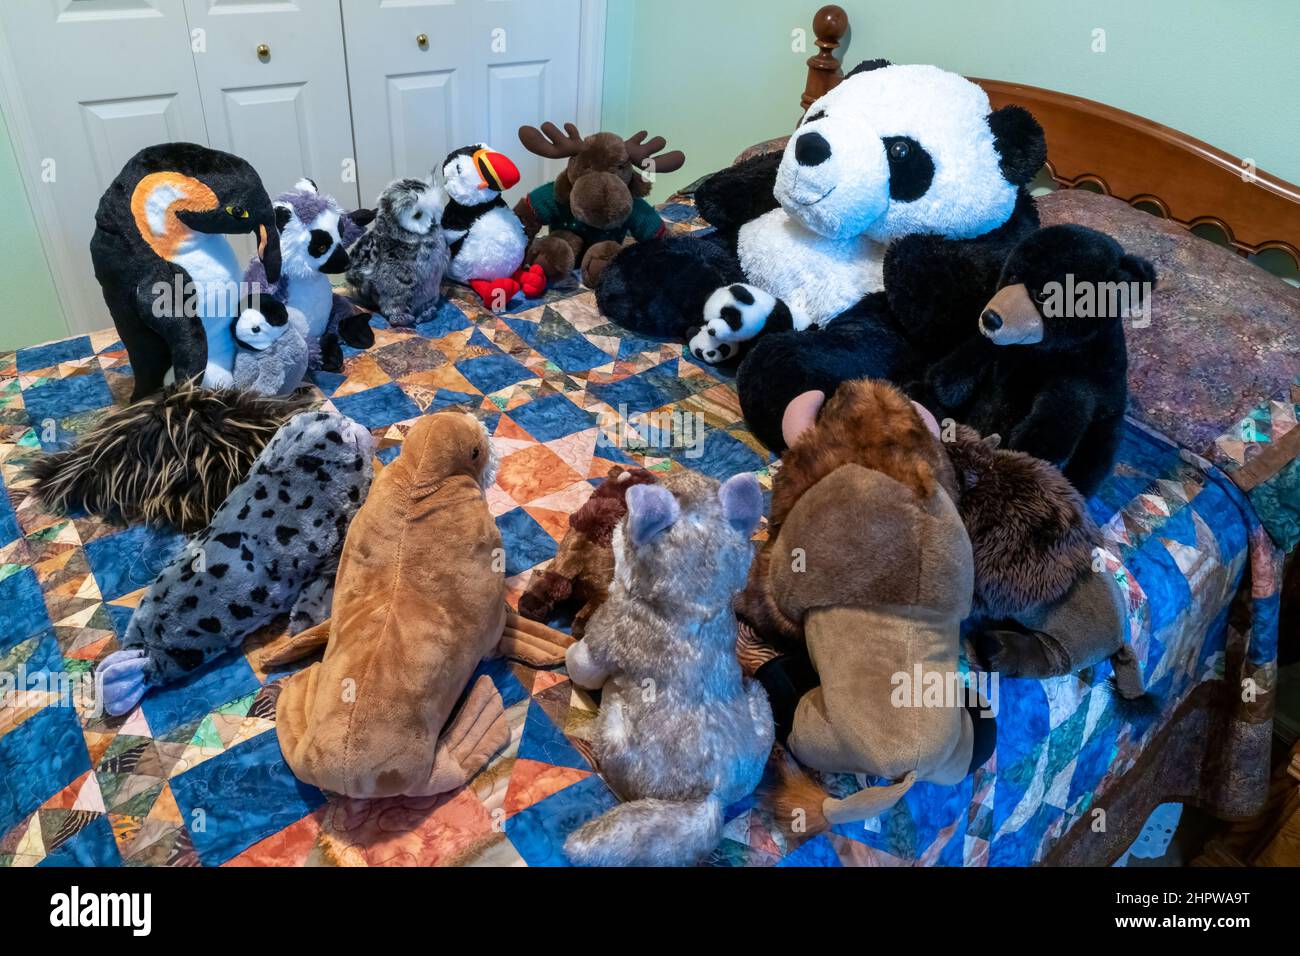 Des animaux en peluche se sont rassemblés pour raconter des histoires sur un lit. Banque D'Images